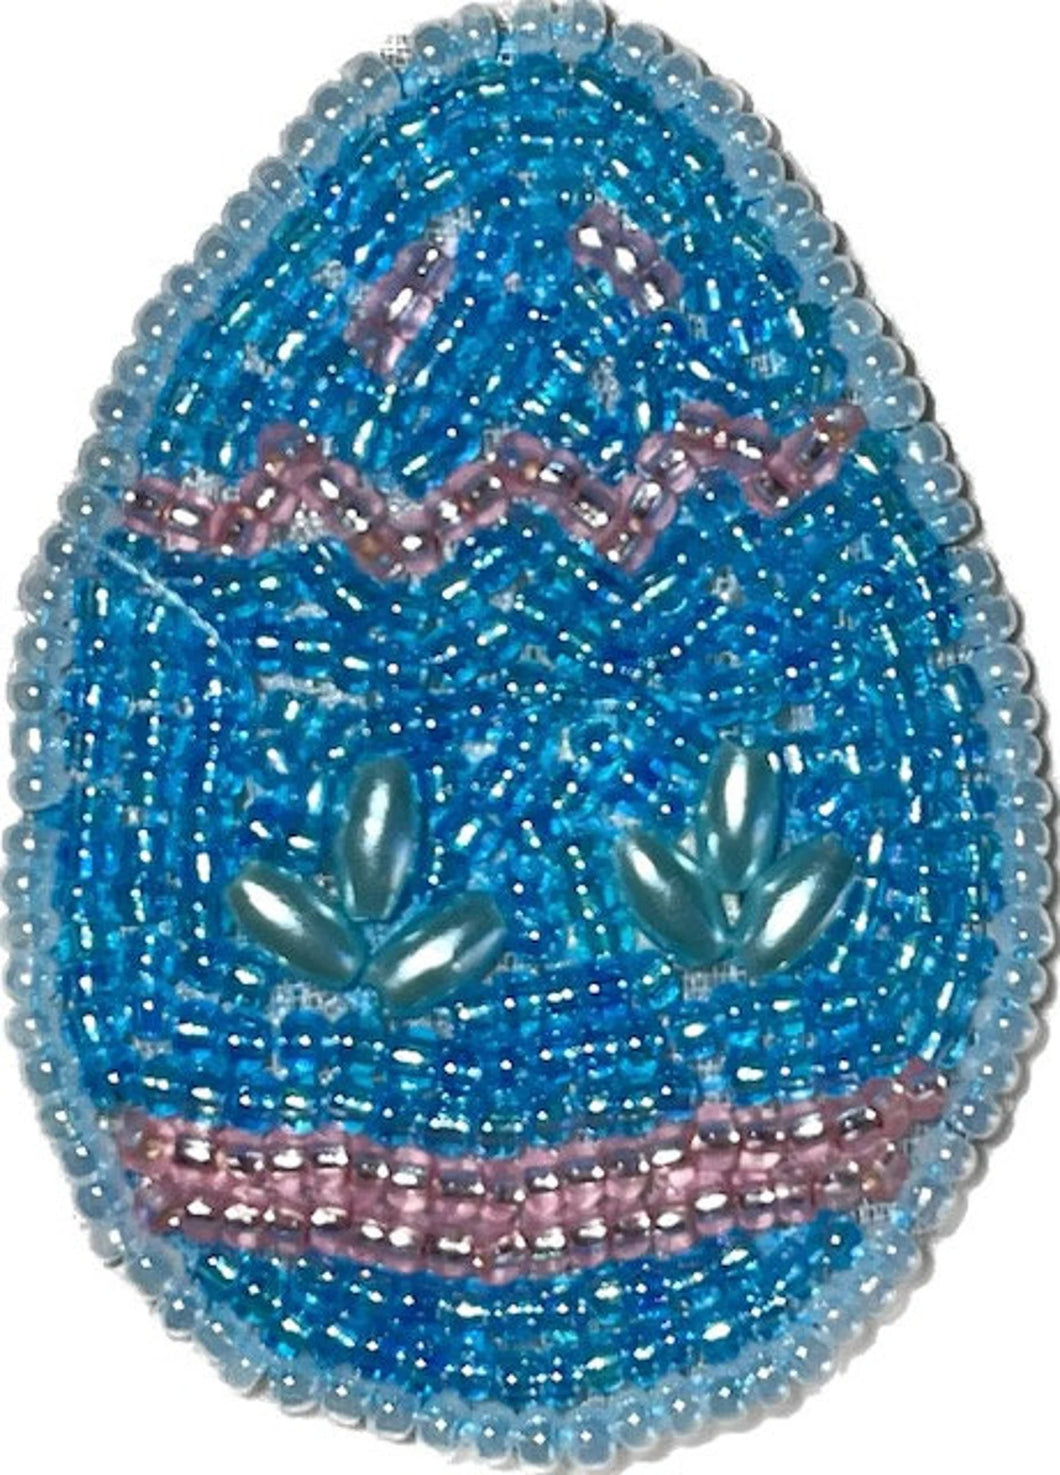 Blue Easter Egg 2